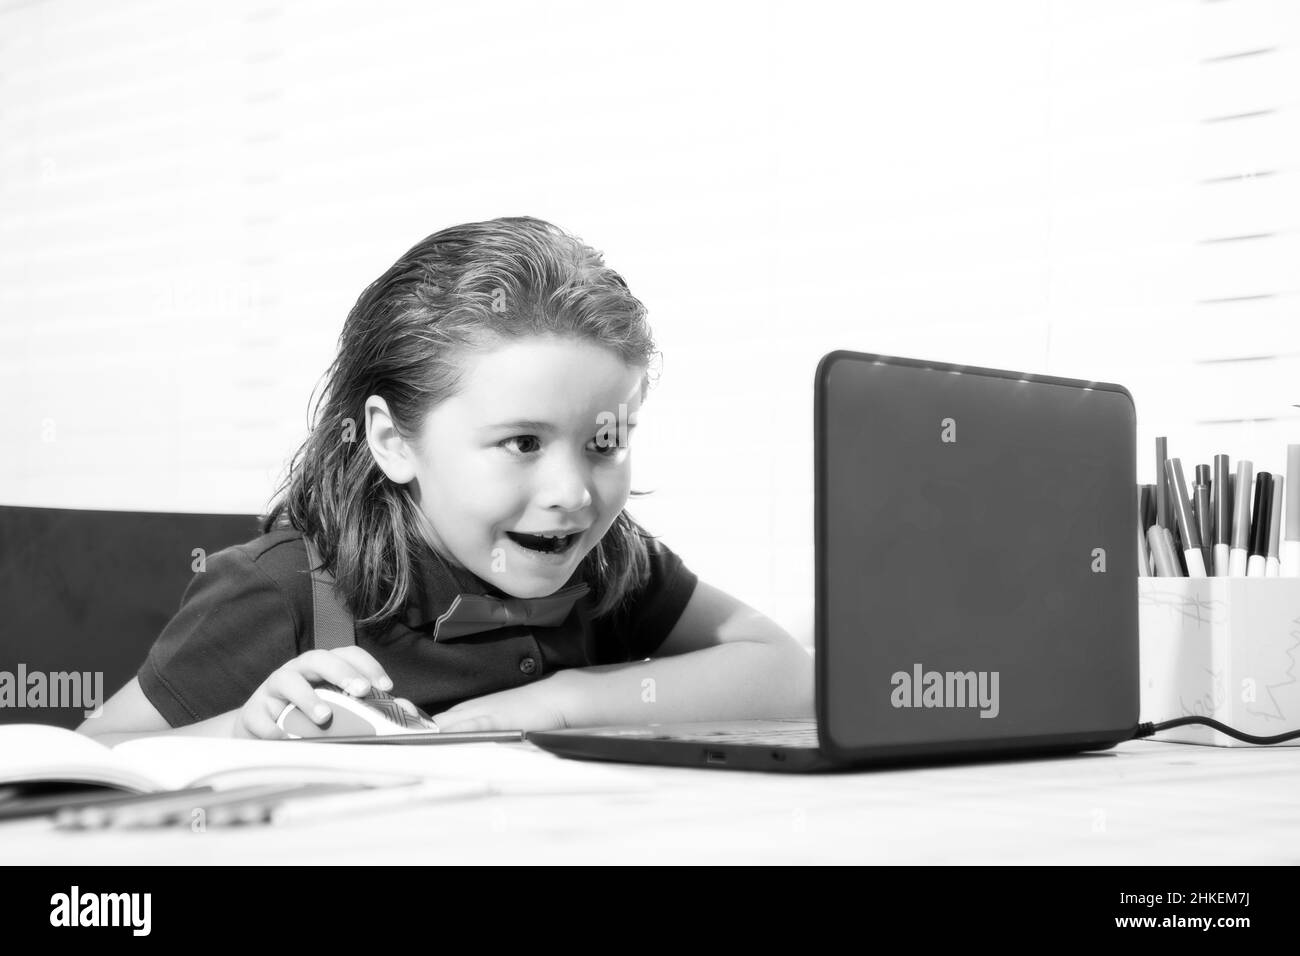 Garçon d'école avec un visage souriant étudiant et utilisant un ordinateur portable et écrivant sur un ordinateur portable. Nerd drôle élève. Banque D'Images